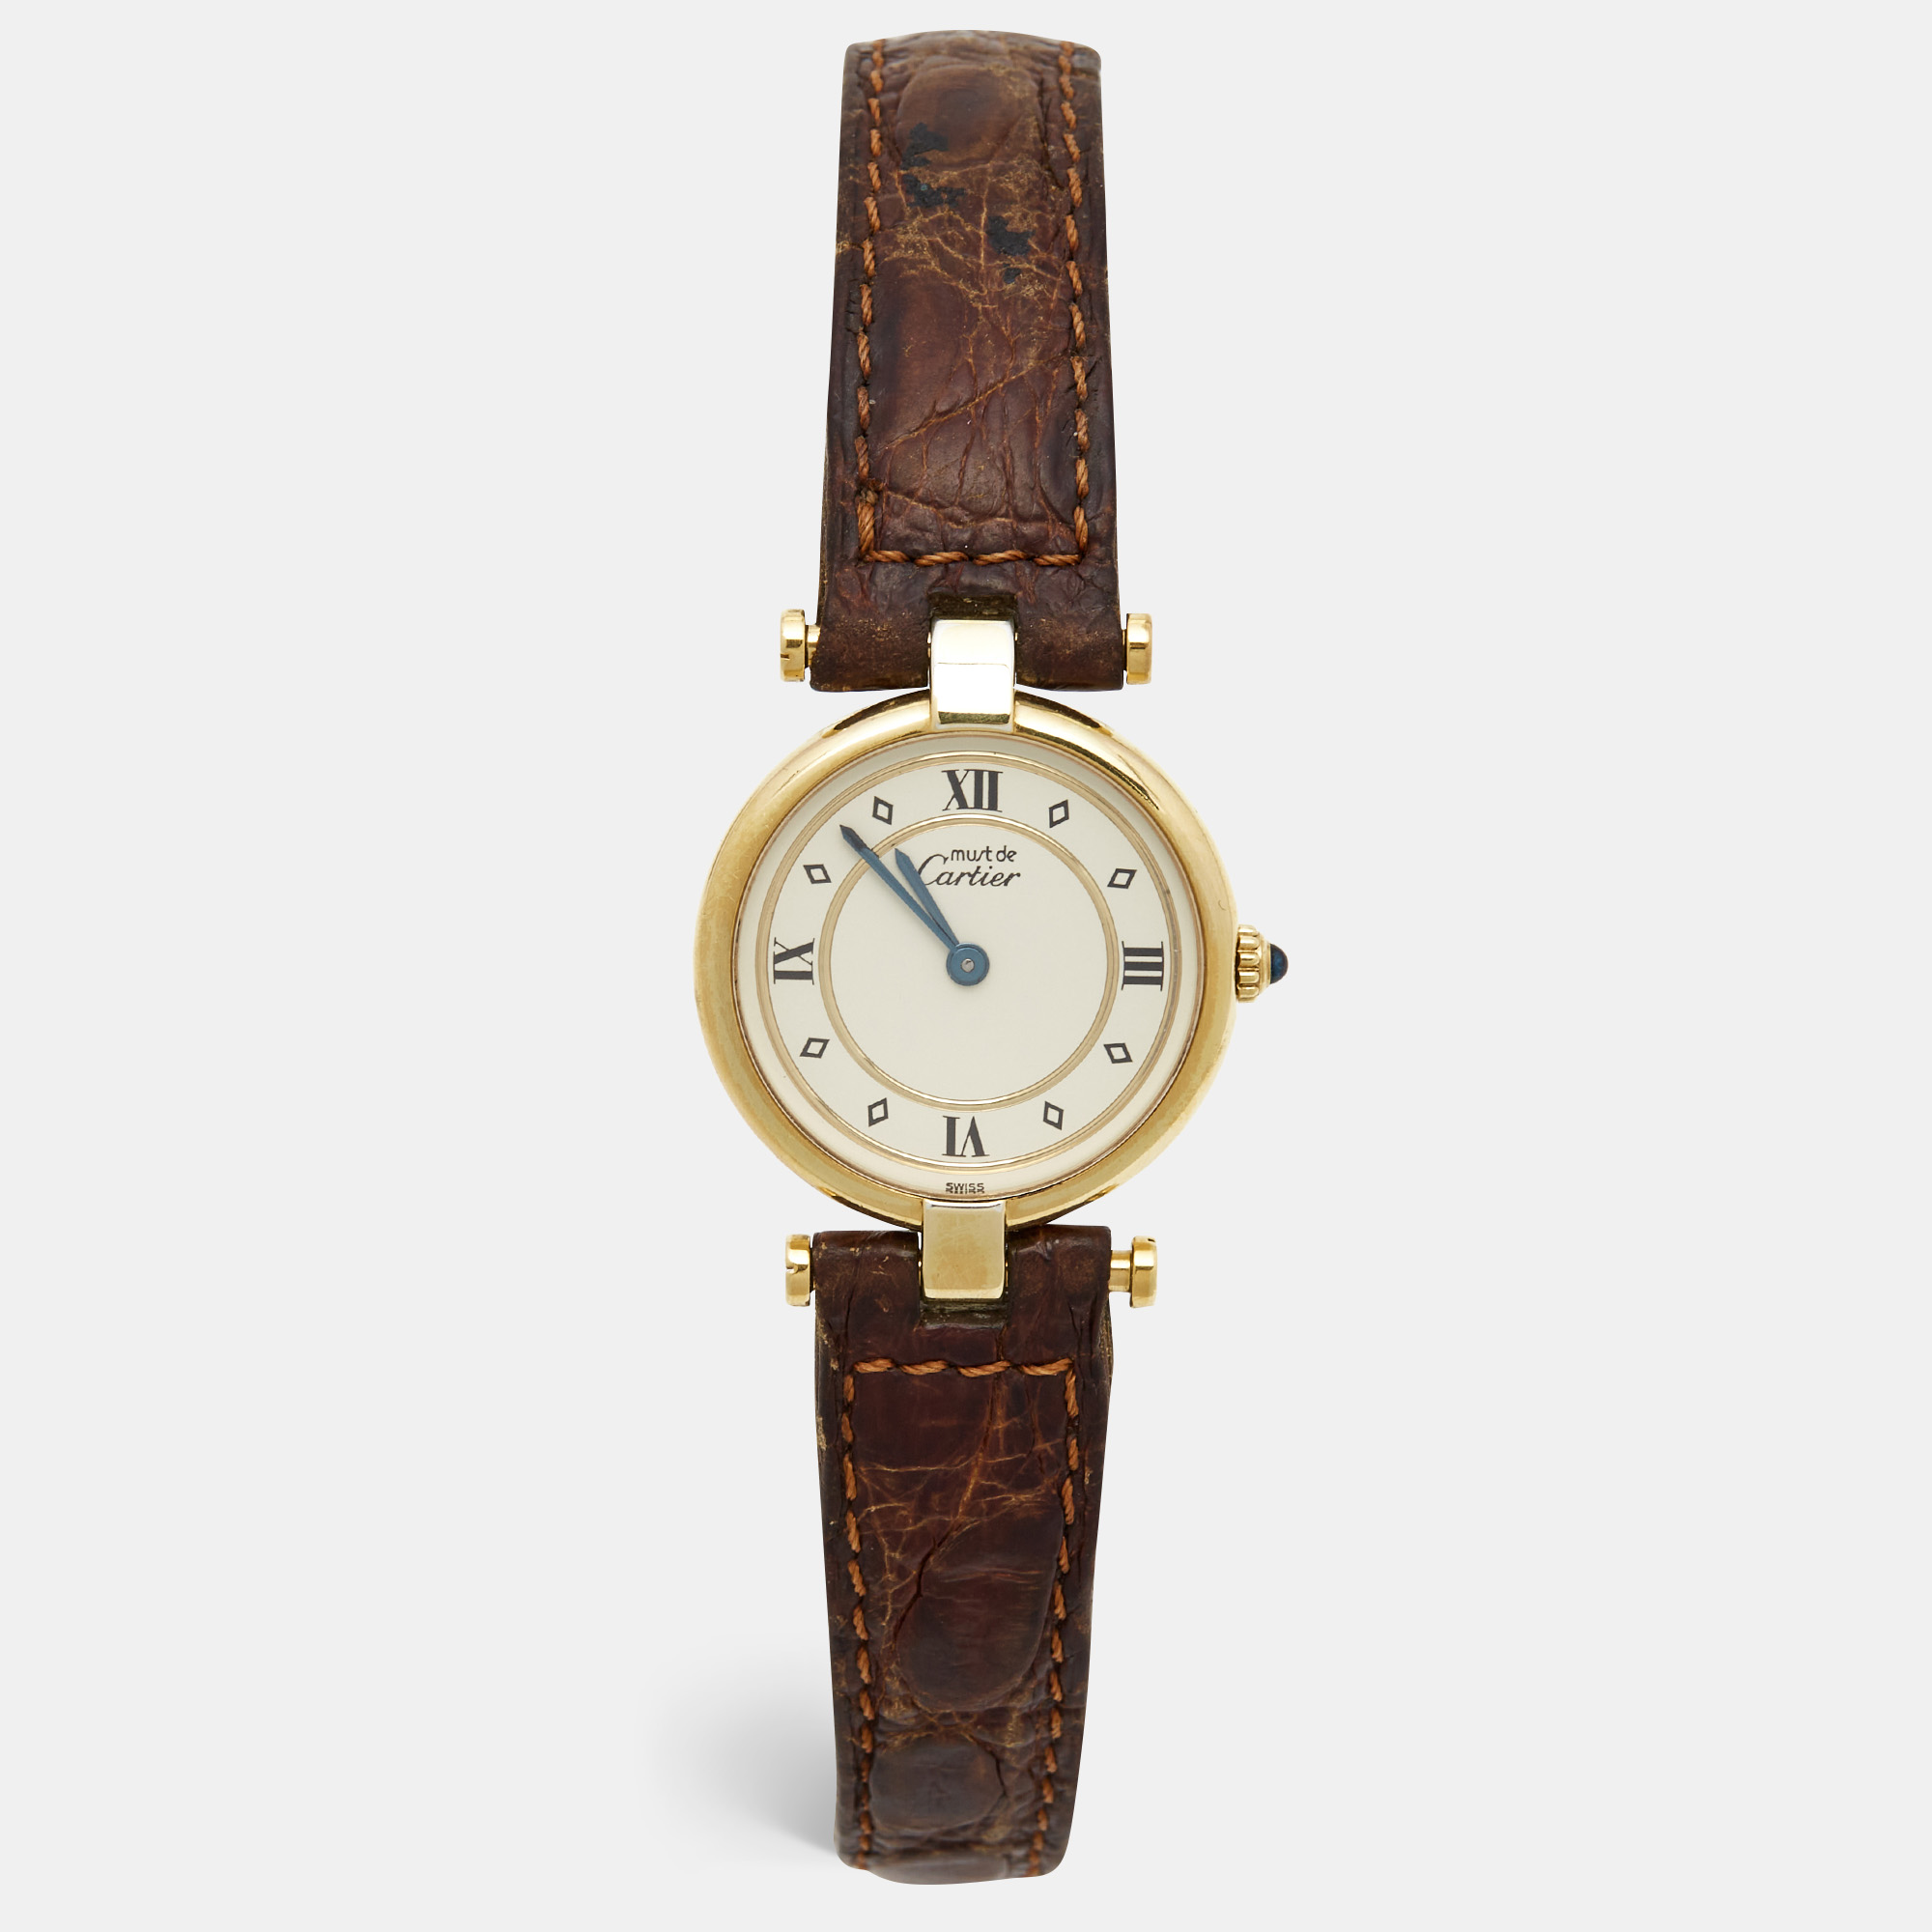 Cartier cream vermeil alligator must de cartier women's wristwatch 24 mm